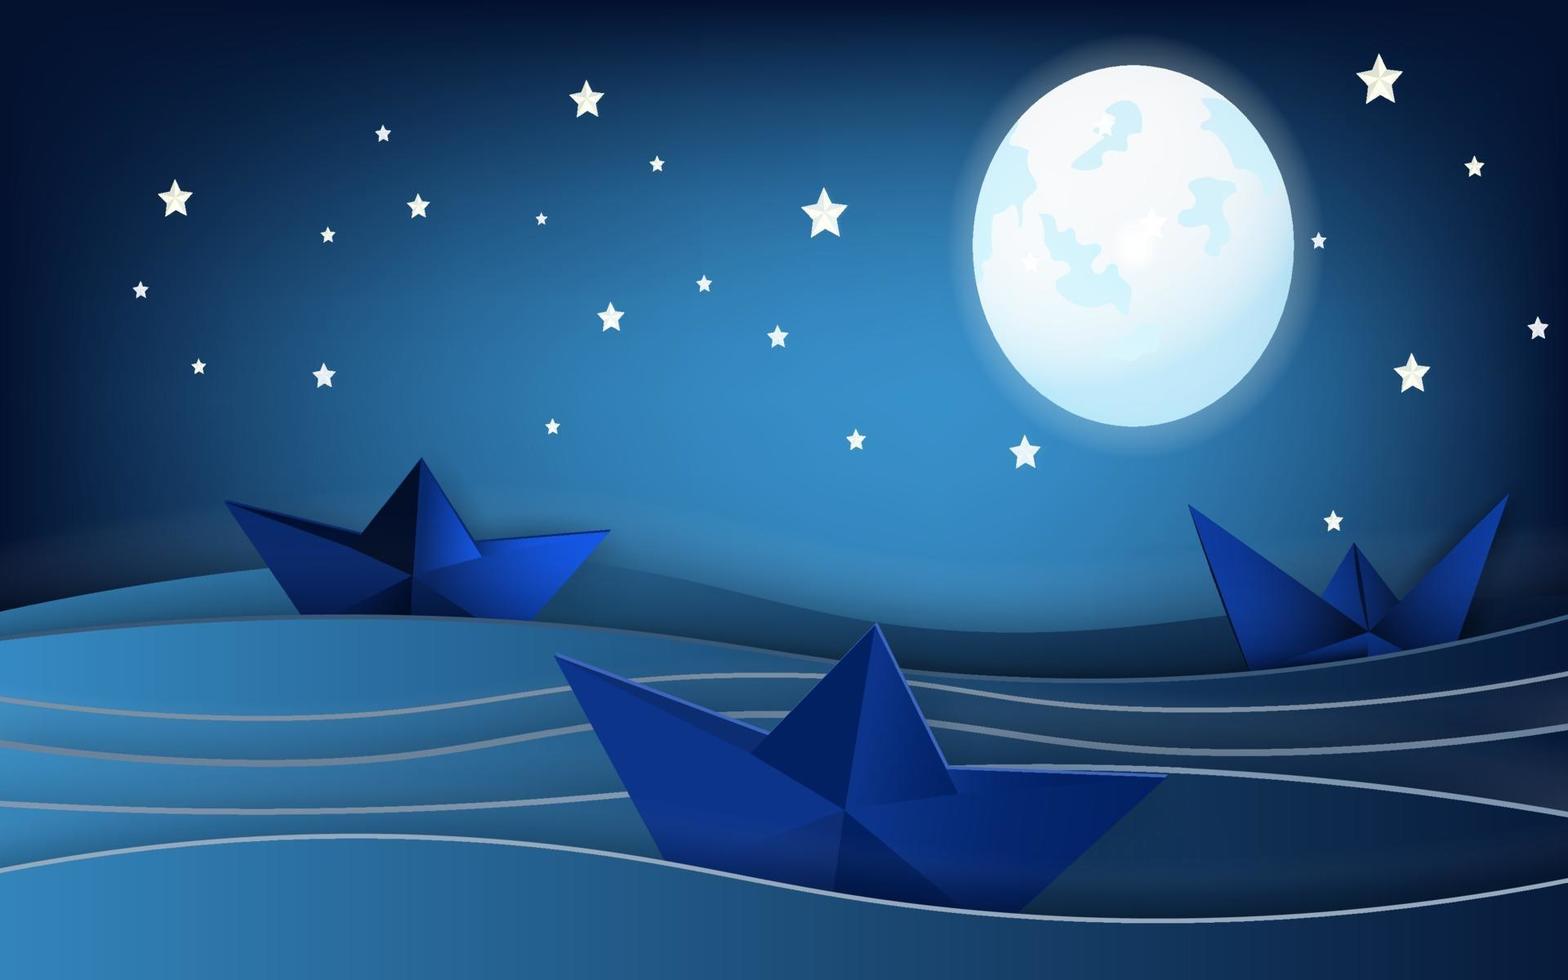 veleiros na paisagem do oceano com lua e estrelas no céu noturno vetor